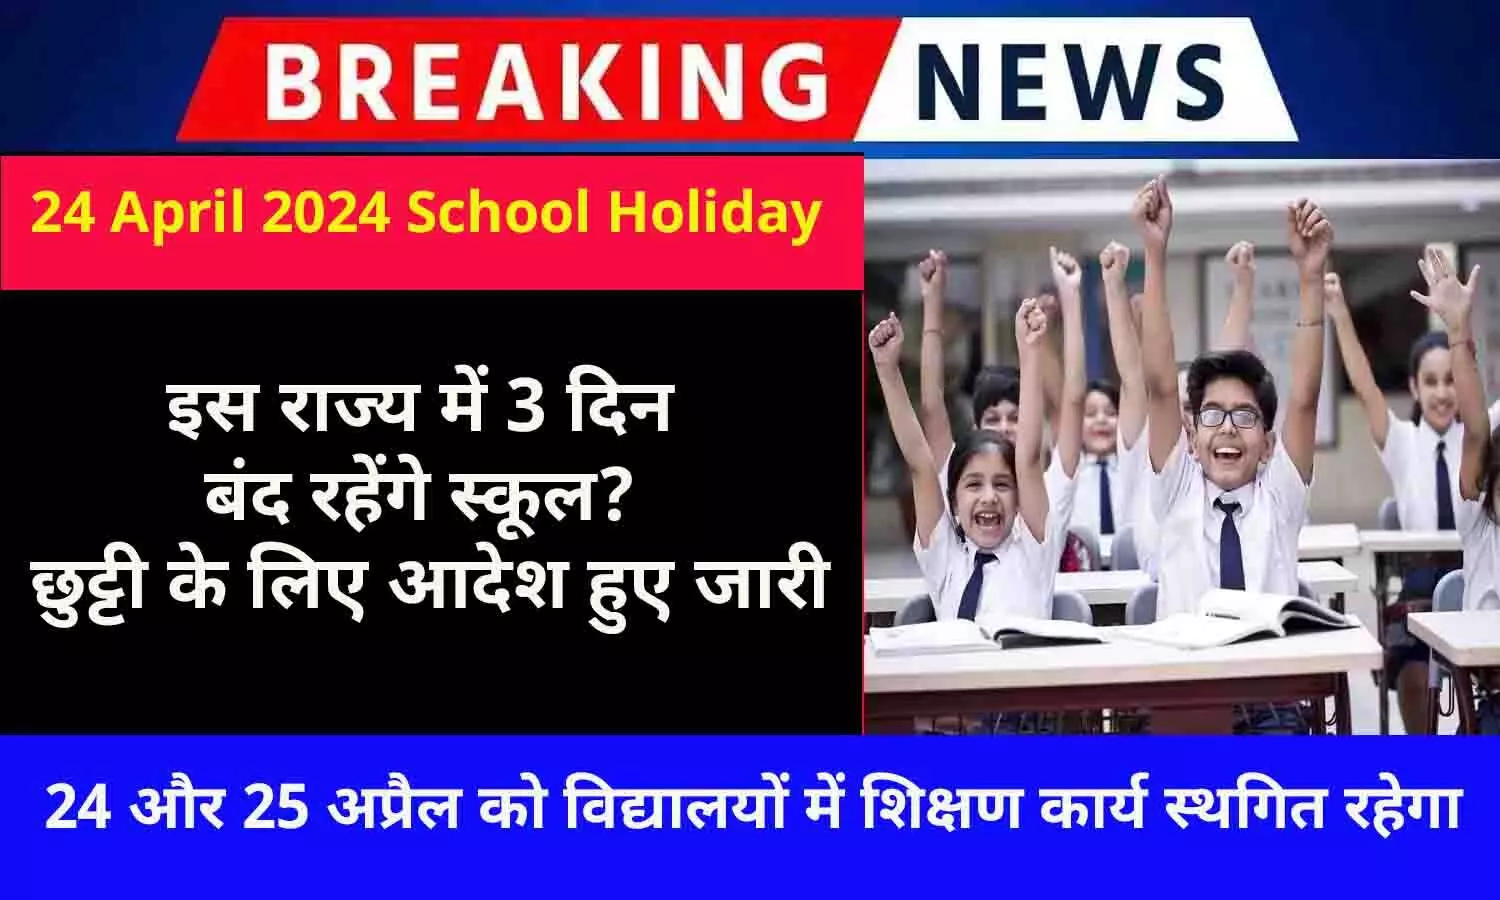 24 April 2024 School Holiday Tomorrow In India: बड़ा ऐलान! इस राज्य में 3 दिन बंद रहेंगे स्कूल? छुट्टी के लिए आदेश हुए जारी